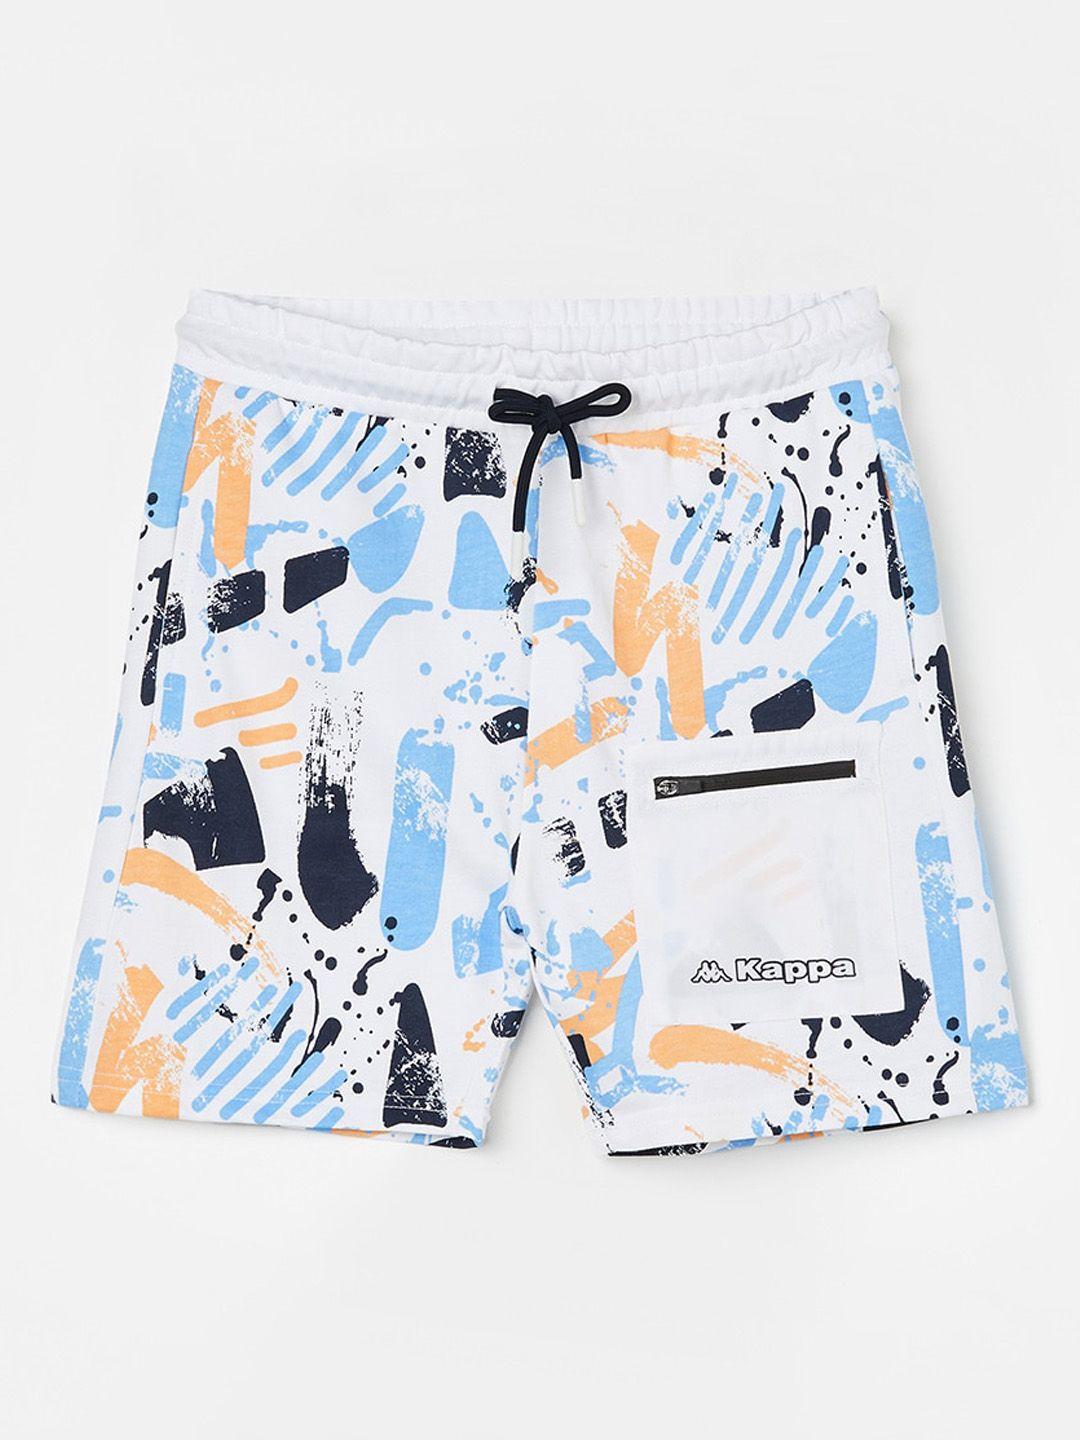 kappa-boys-abstract-printed-pure-cotton-shorts